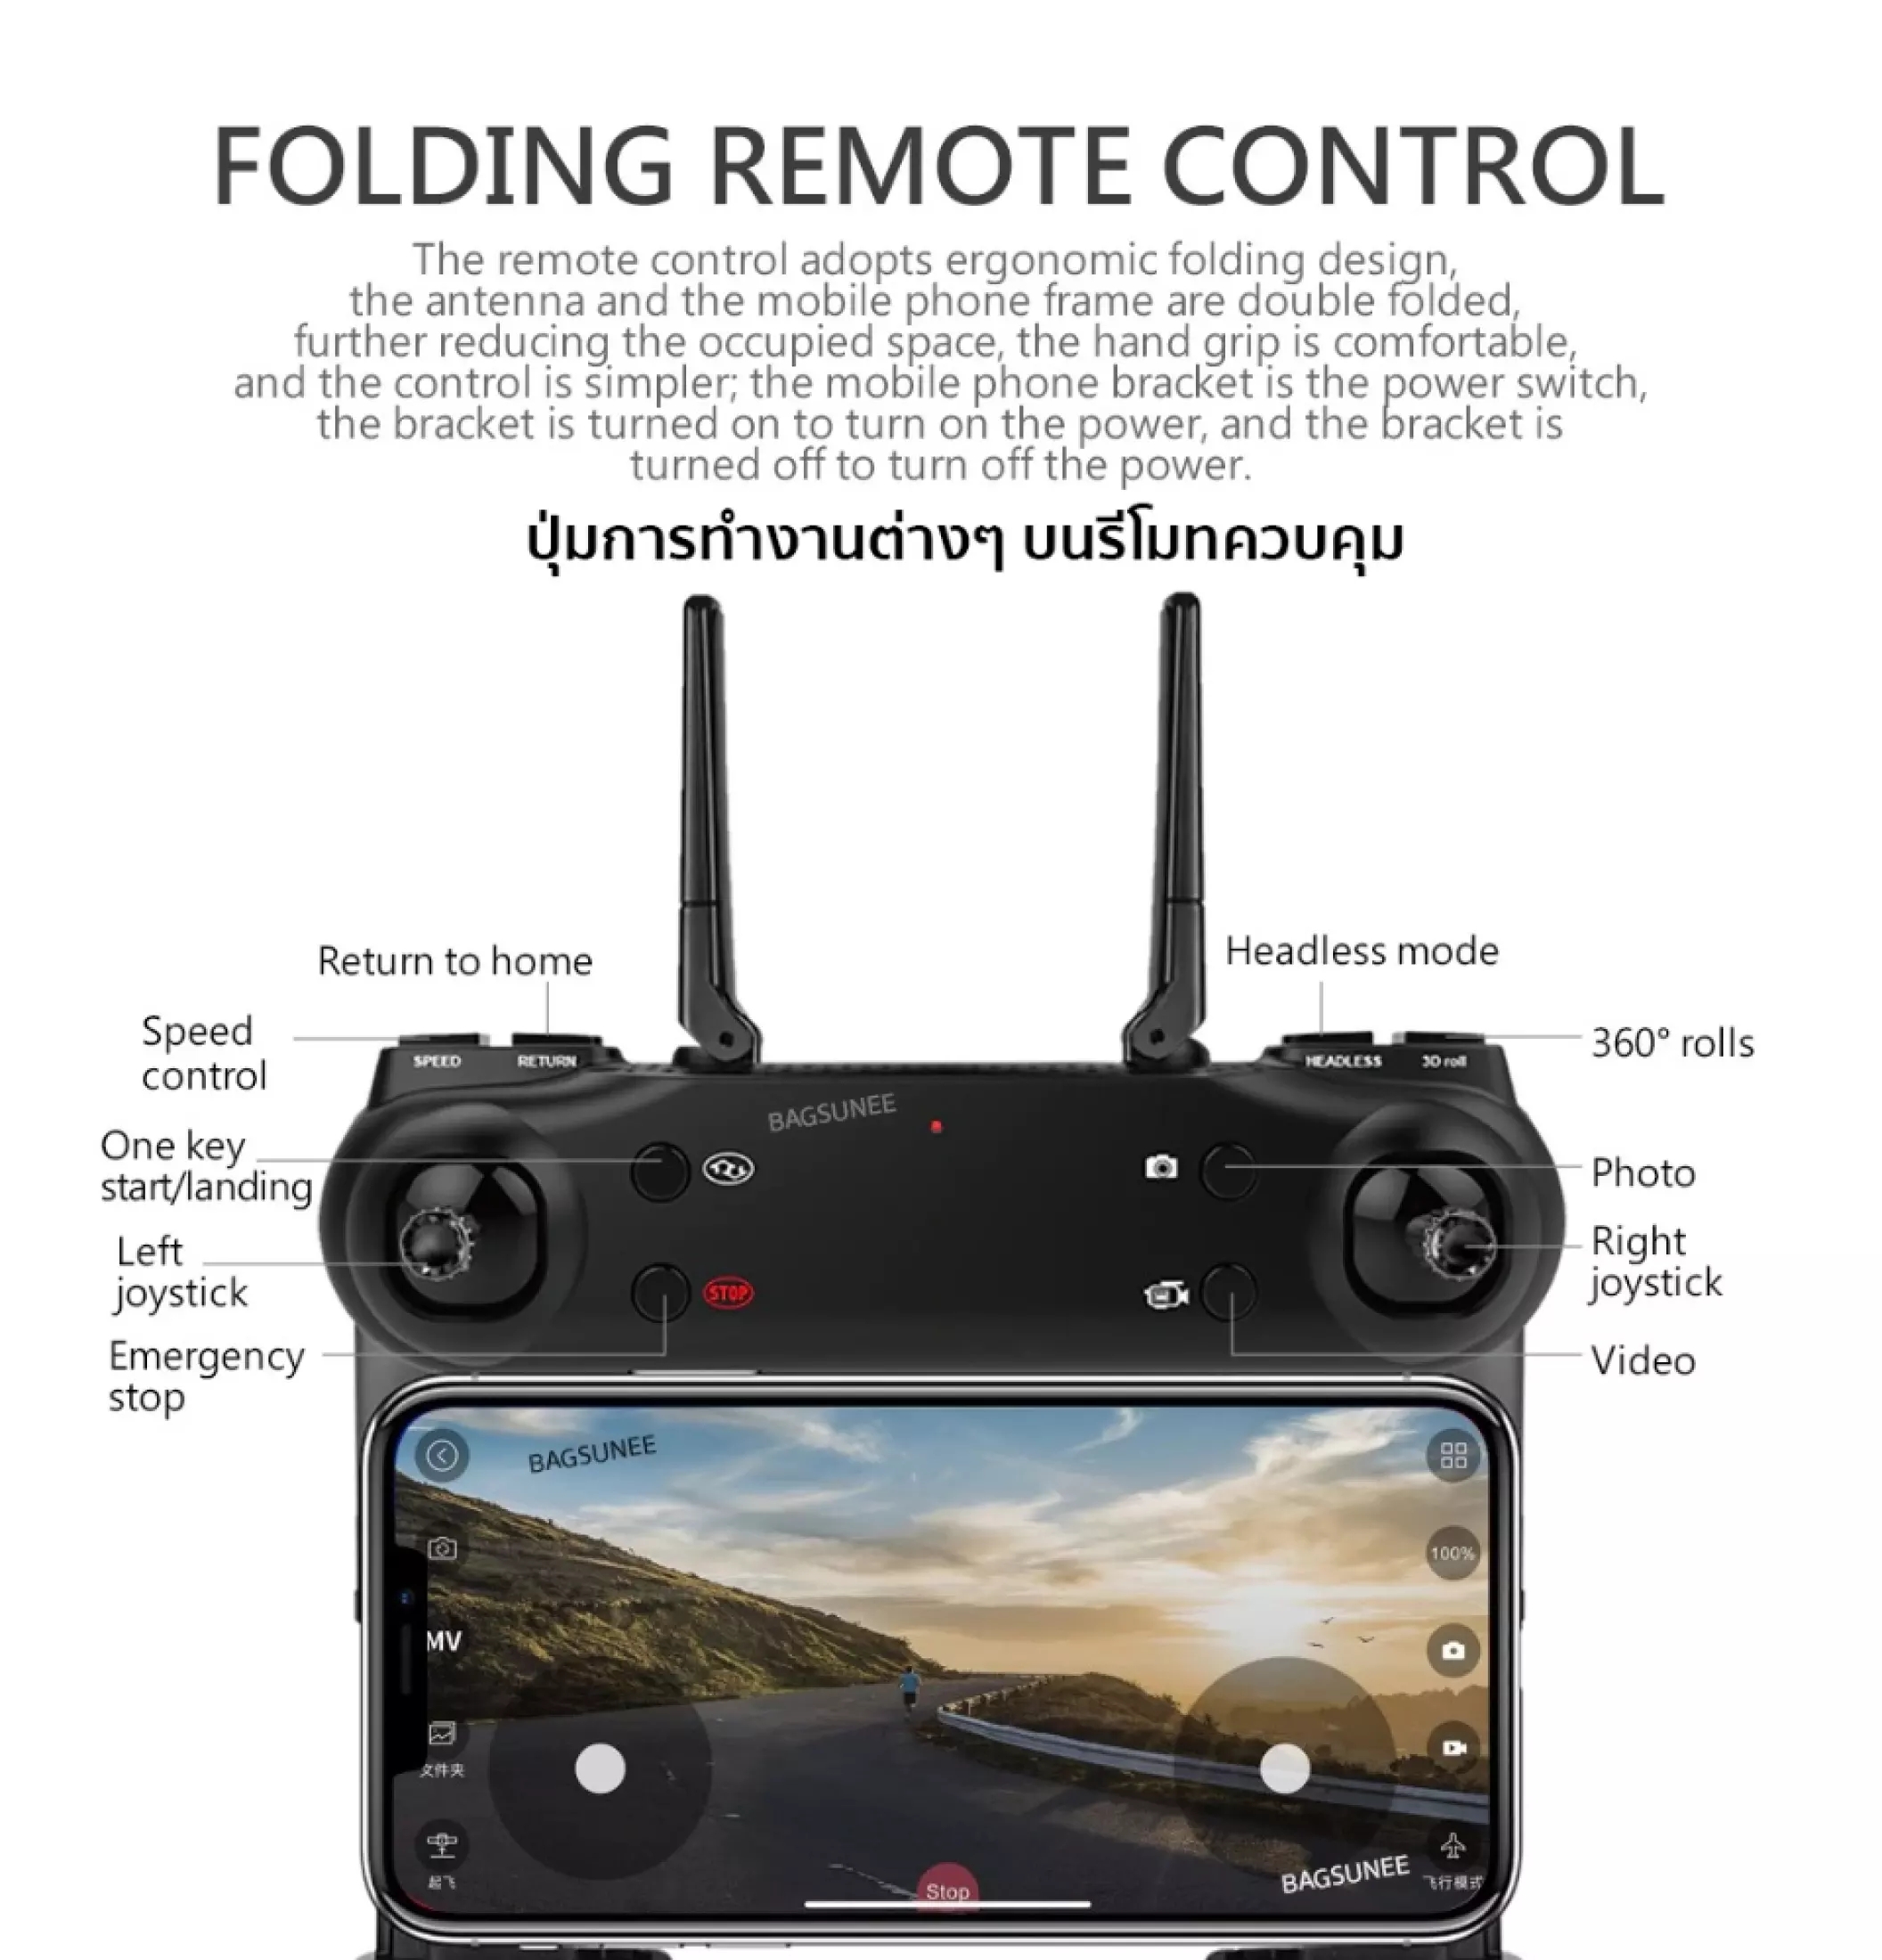 มุมมองเพิ่มเติมของสินค้า Drone & Battery【Blackshark-106 】4k HDร้อมกล้องสองตัว WiFi FPV แบบเรียลไทม์วิดีโอทางอากาศมุมกว้างรีโมทคอนโทรลเฮลิคอปเตอร์สี่แกนของเล่น นรองรับระบบIOS Androidรีโม